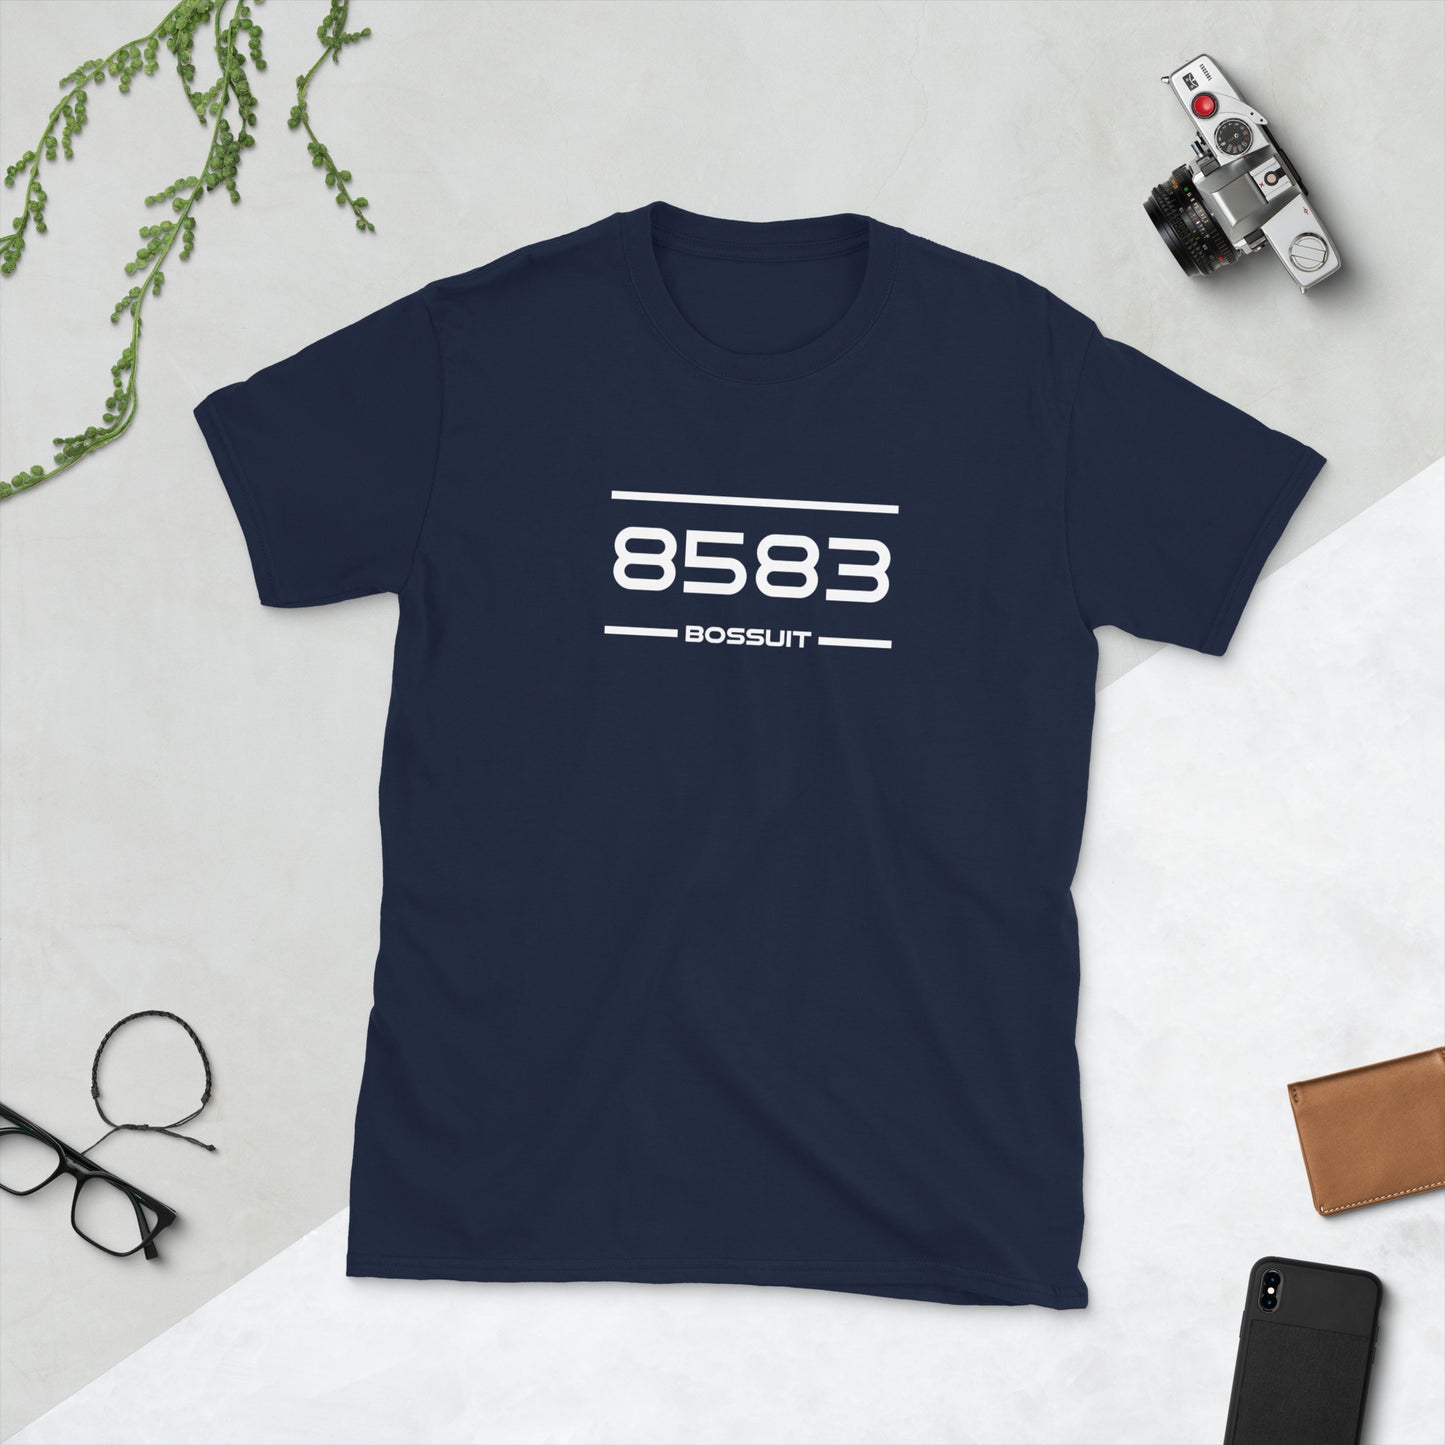 Tshirt - 8583 - Bossuit